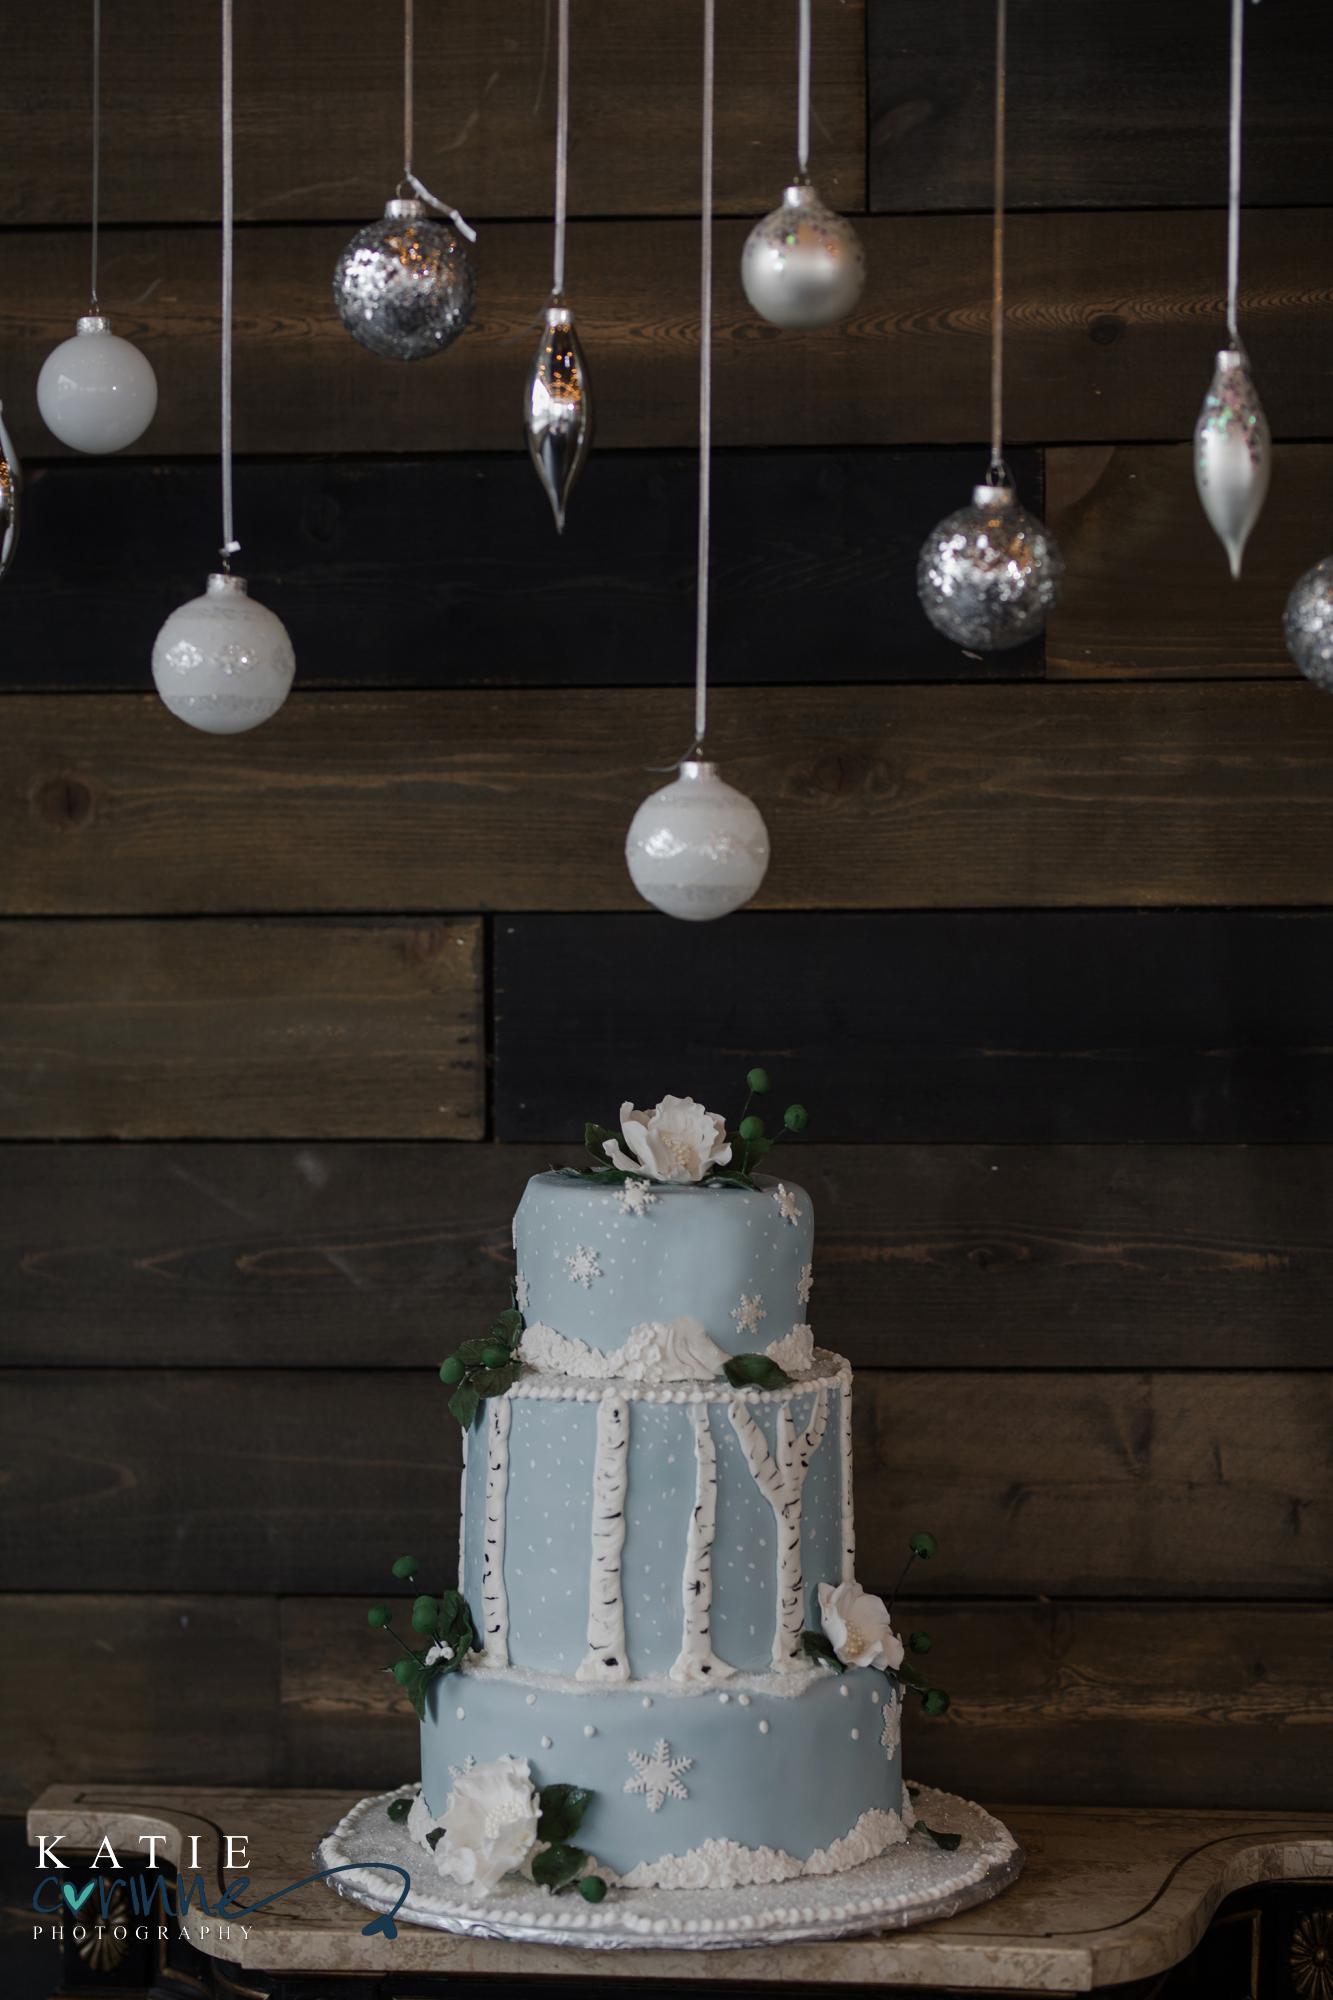 Colorado Winter Wedding Cake under hanging ornaments